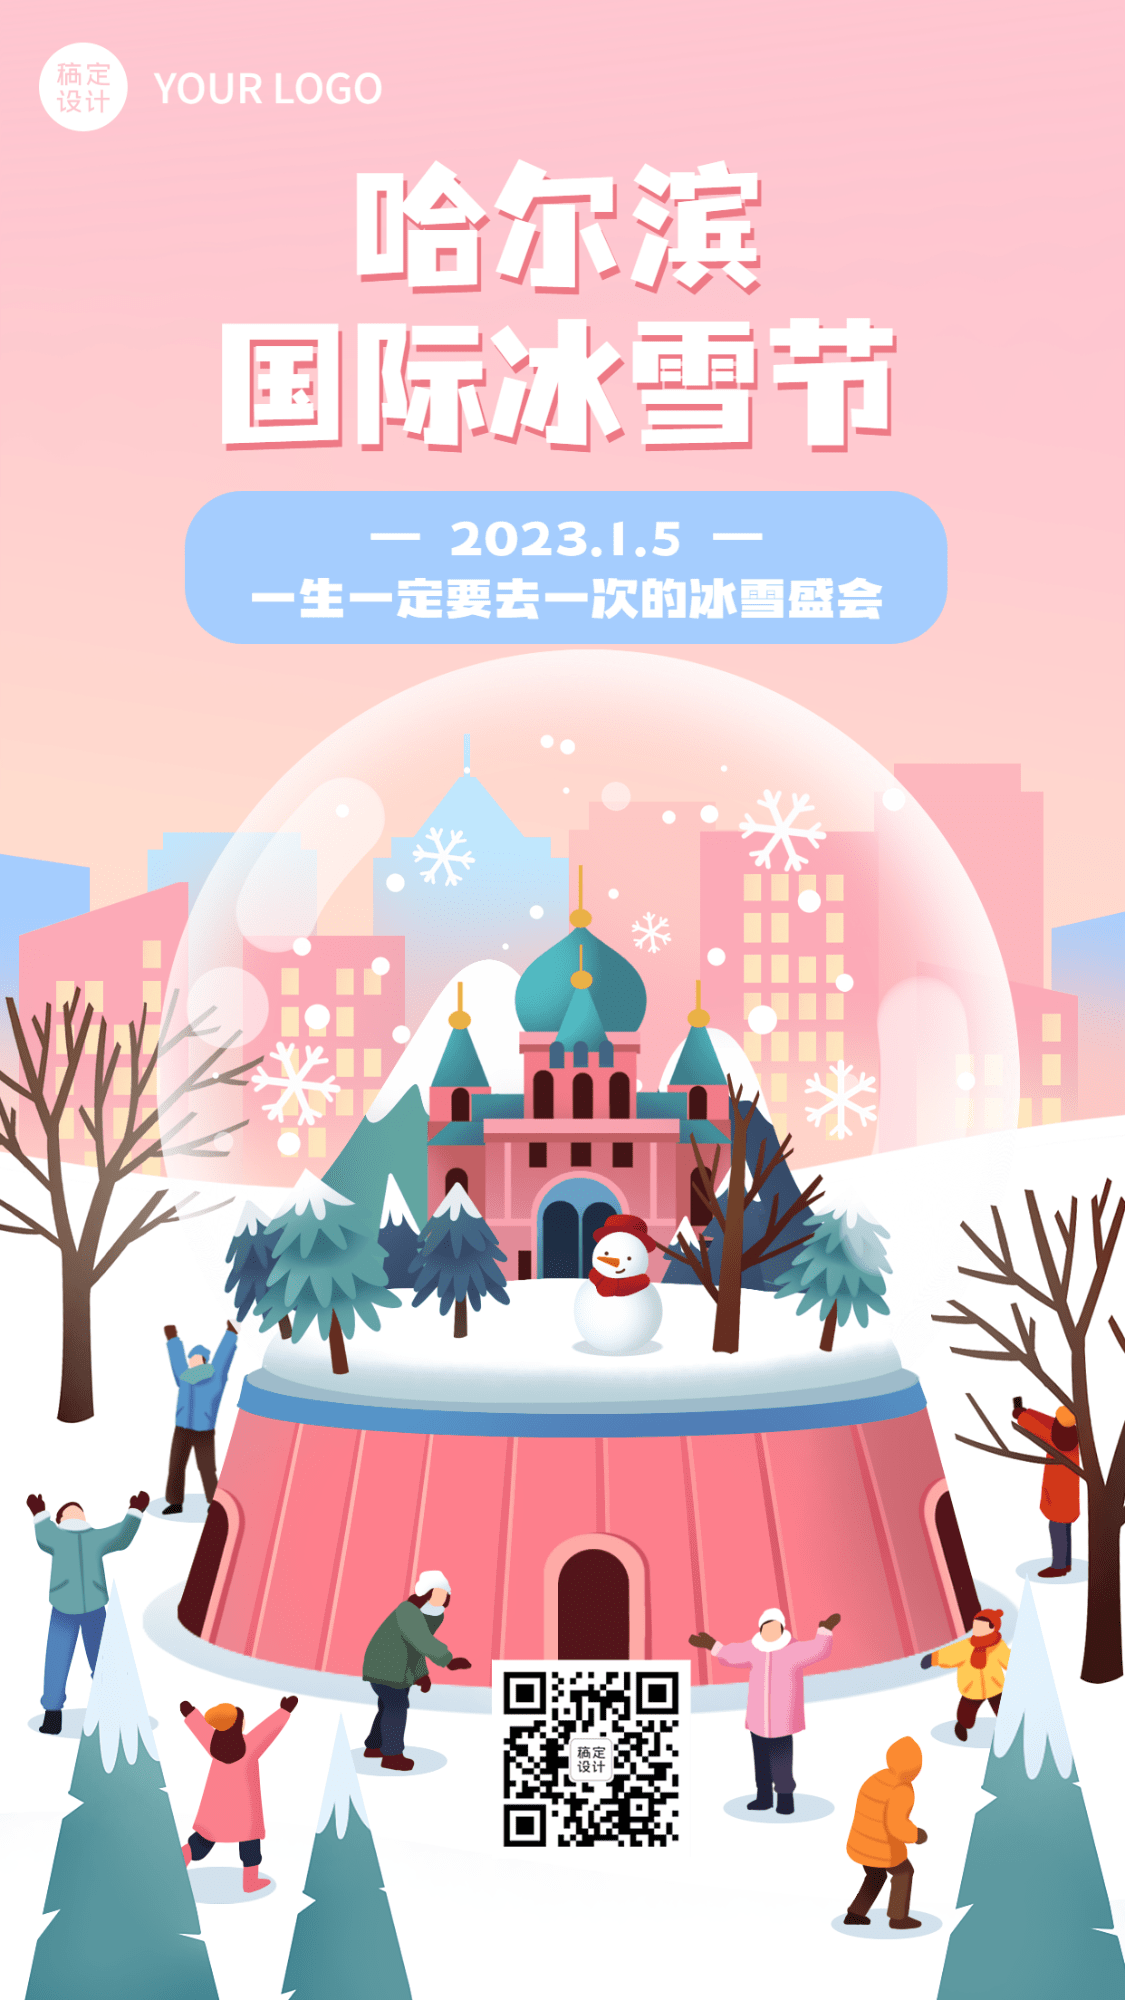 冬季旅游哈尔滨国际冰雪节活动宣传手绘海报